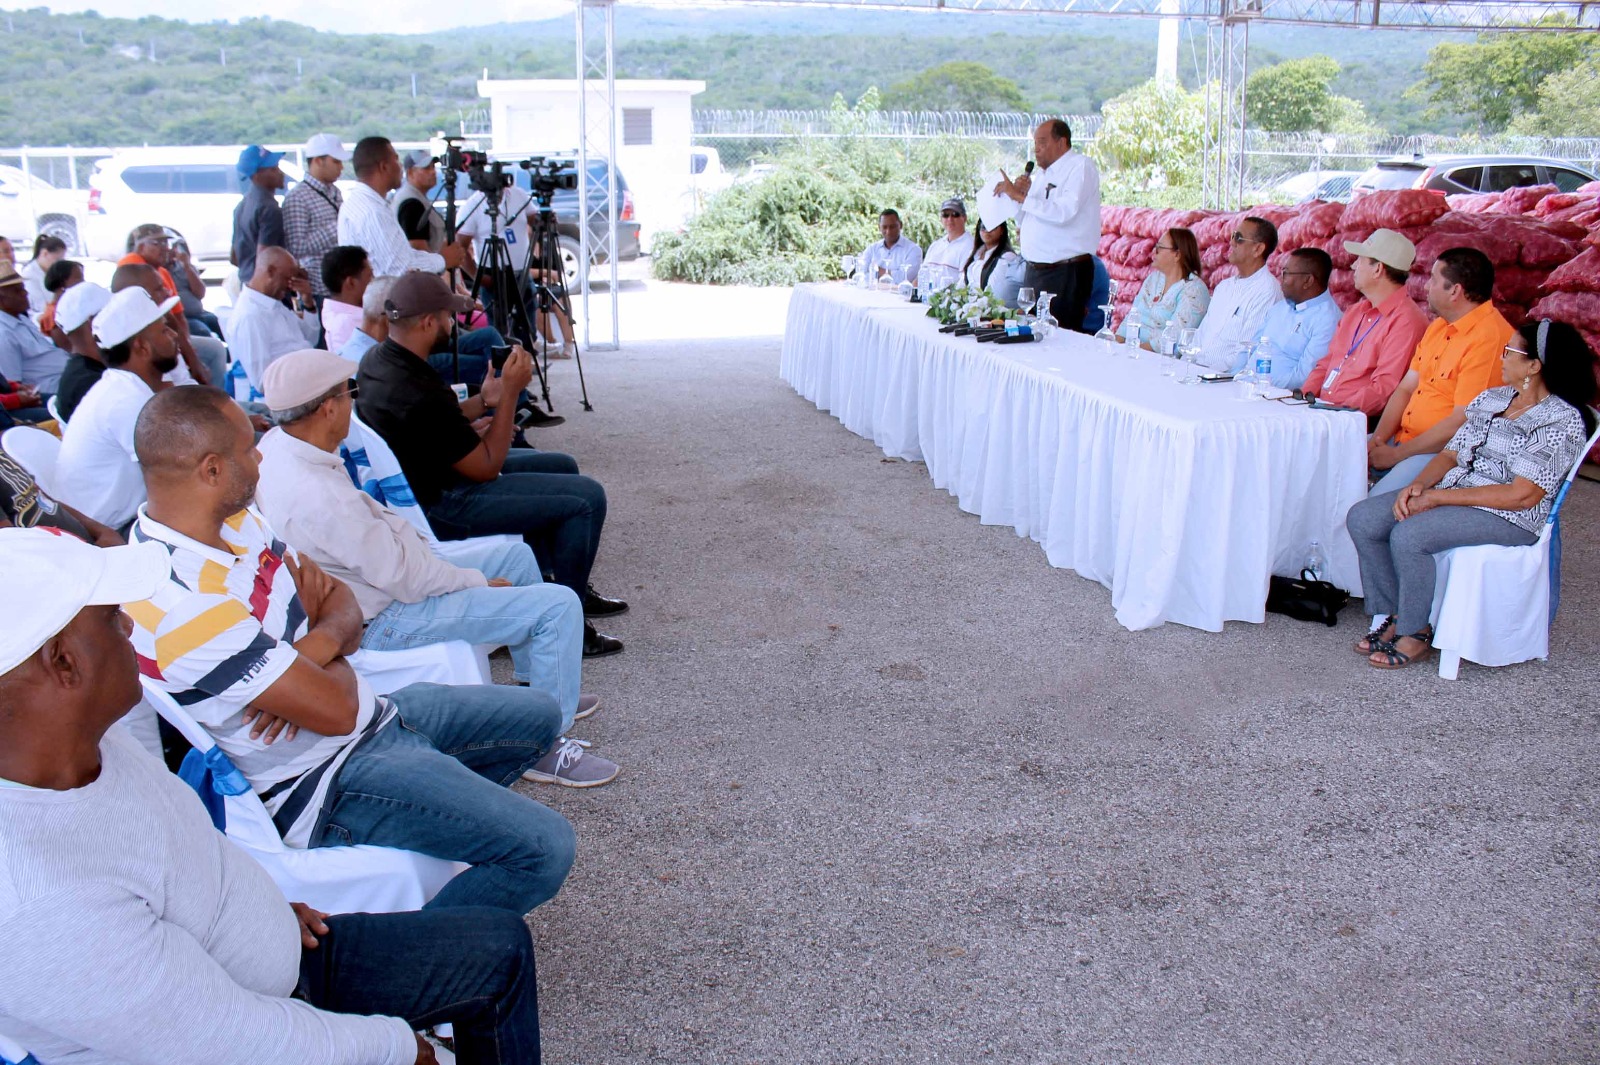 Plan de Desarrollo San Juan entrega RD$80 millones a productores de cebolla de Vallejuelo